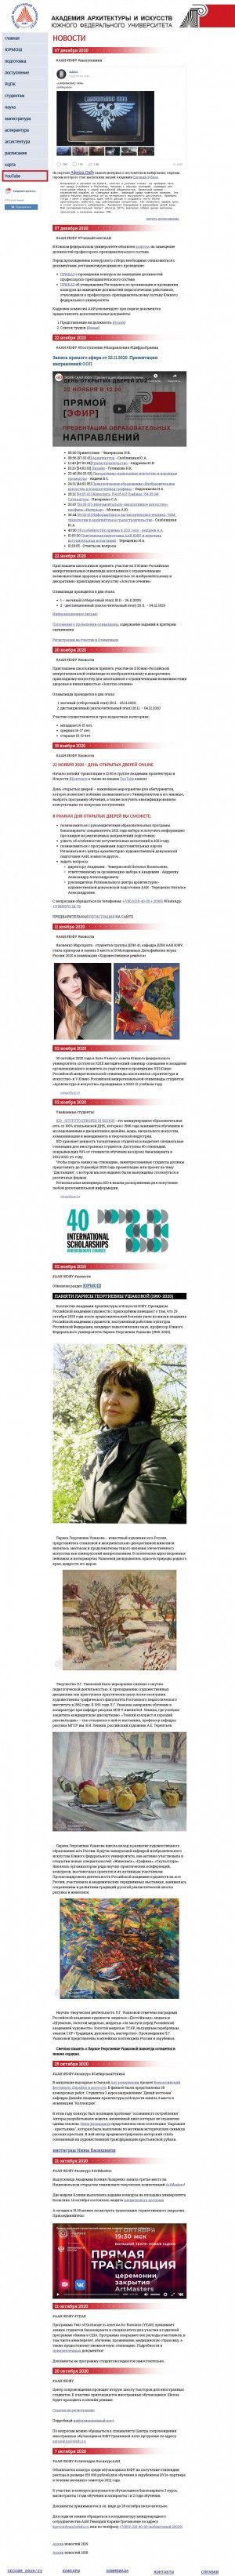 Предпросмотр для www.raai.sfedu.ru — Кафедра Дизайна Академии архитектуры и искусств Южного федерального университета